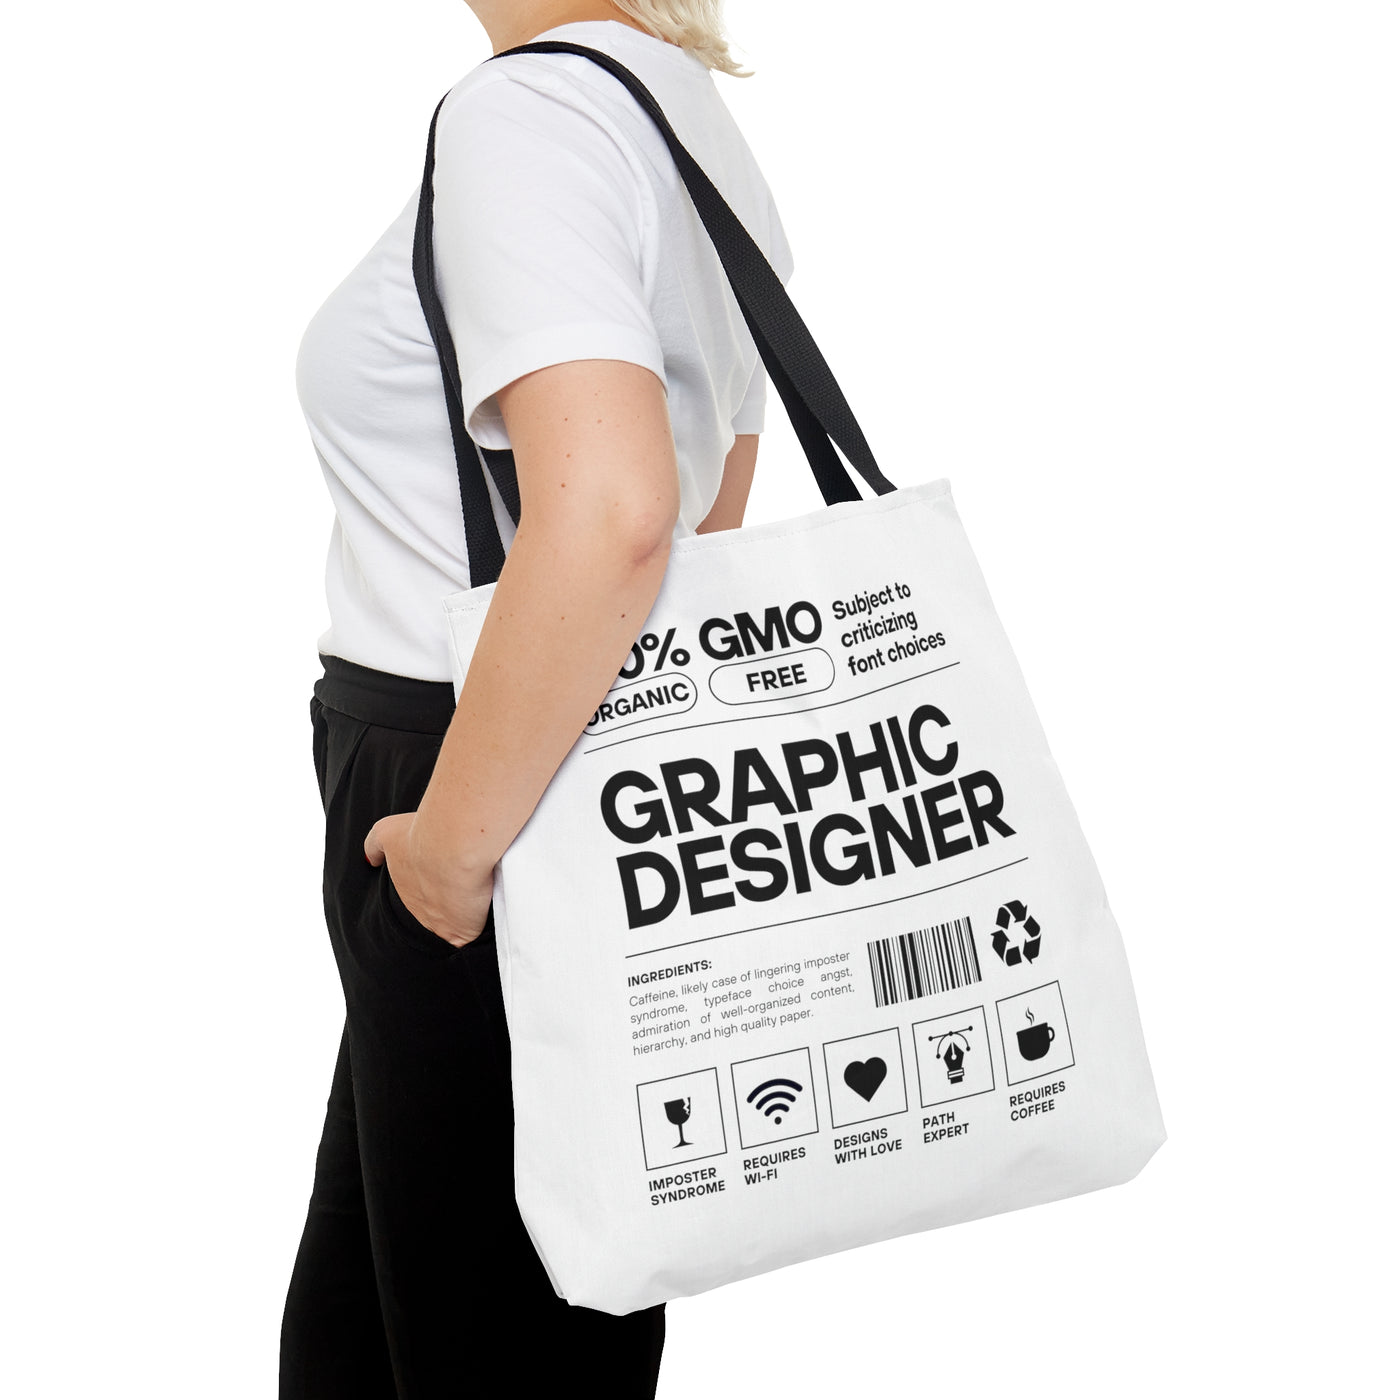 100% Organic Graphic Designer Label Tote Bag